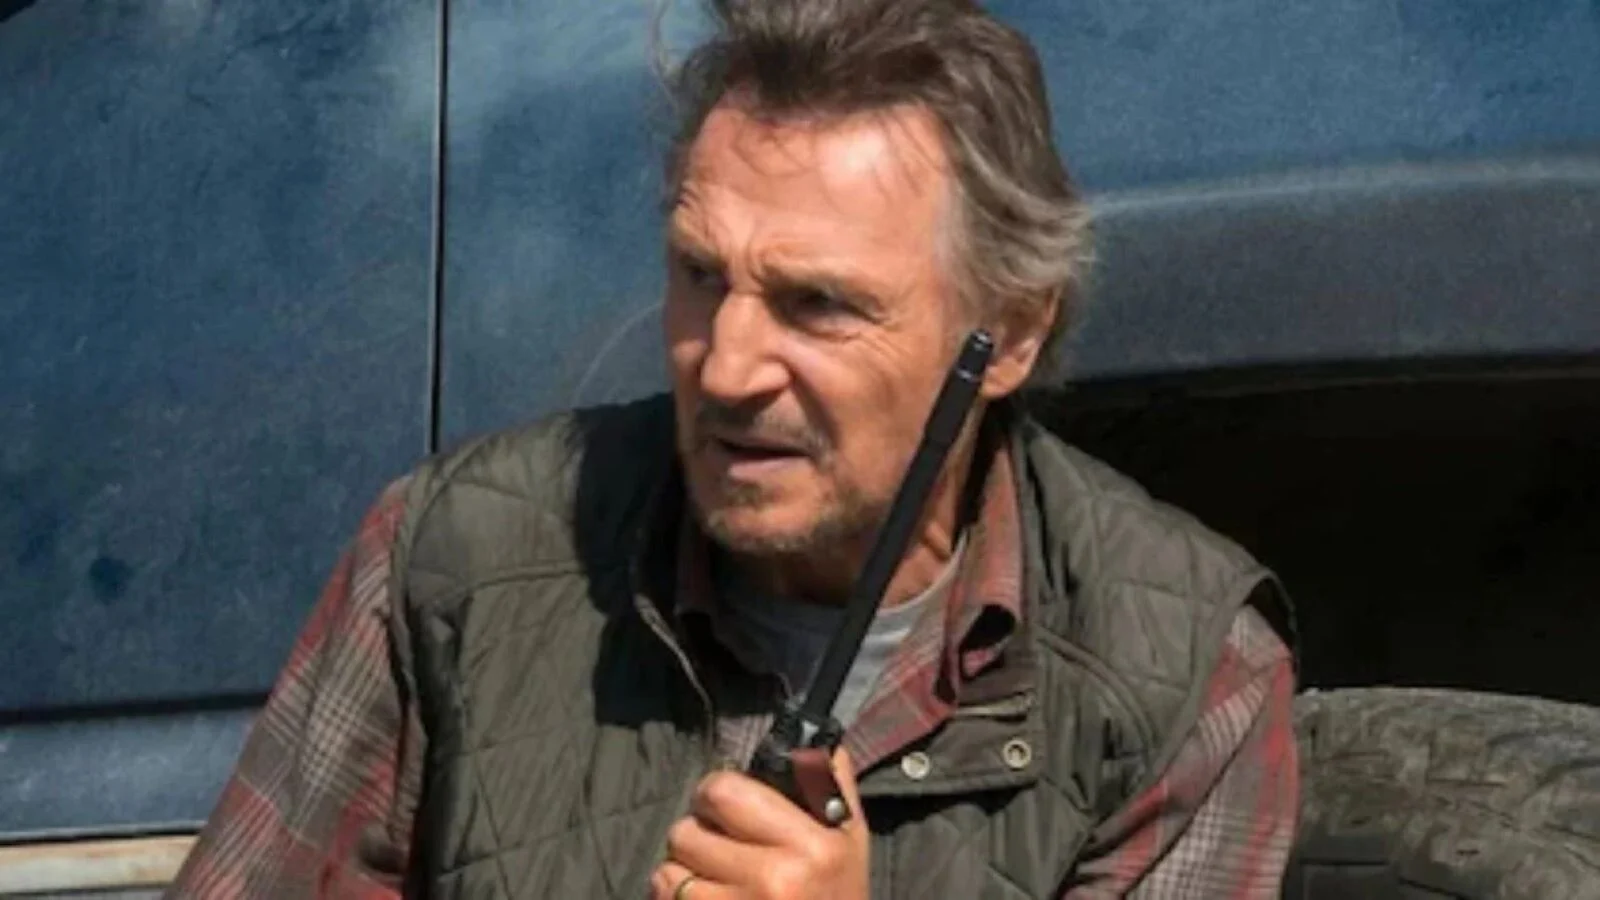 "Un uomo sopra la legge”, alle 21.20 su Rai 2: ecco la trama e il cast del film con Liam Neeson